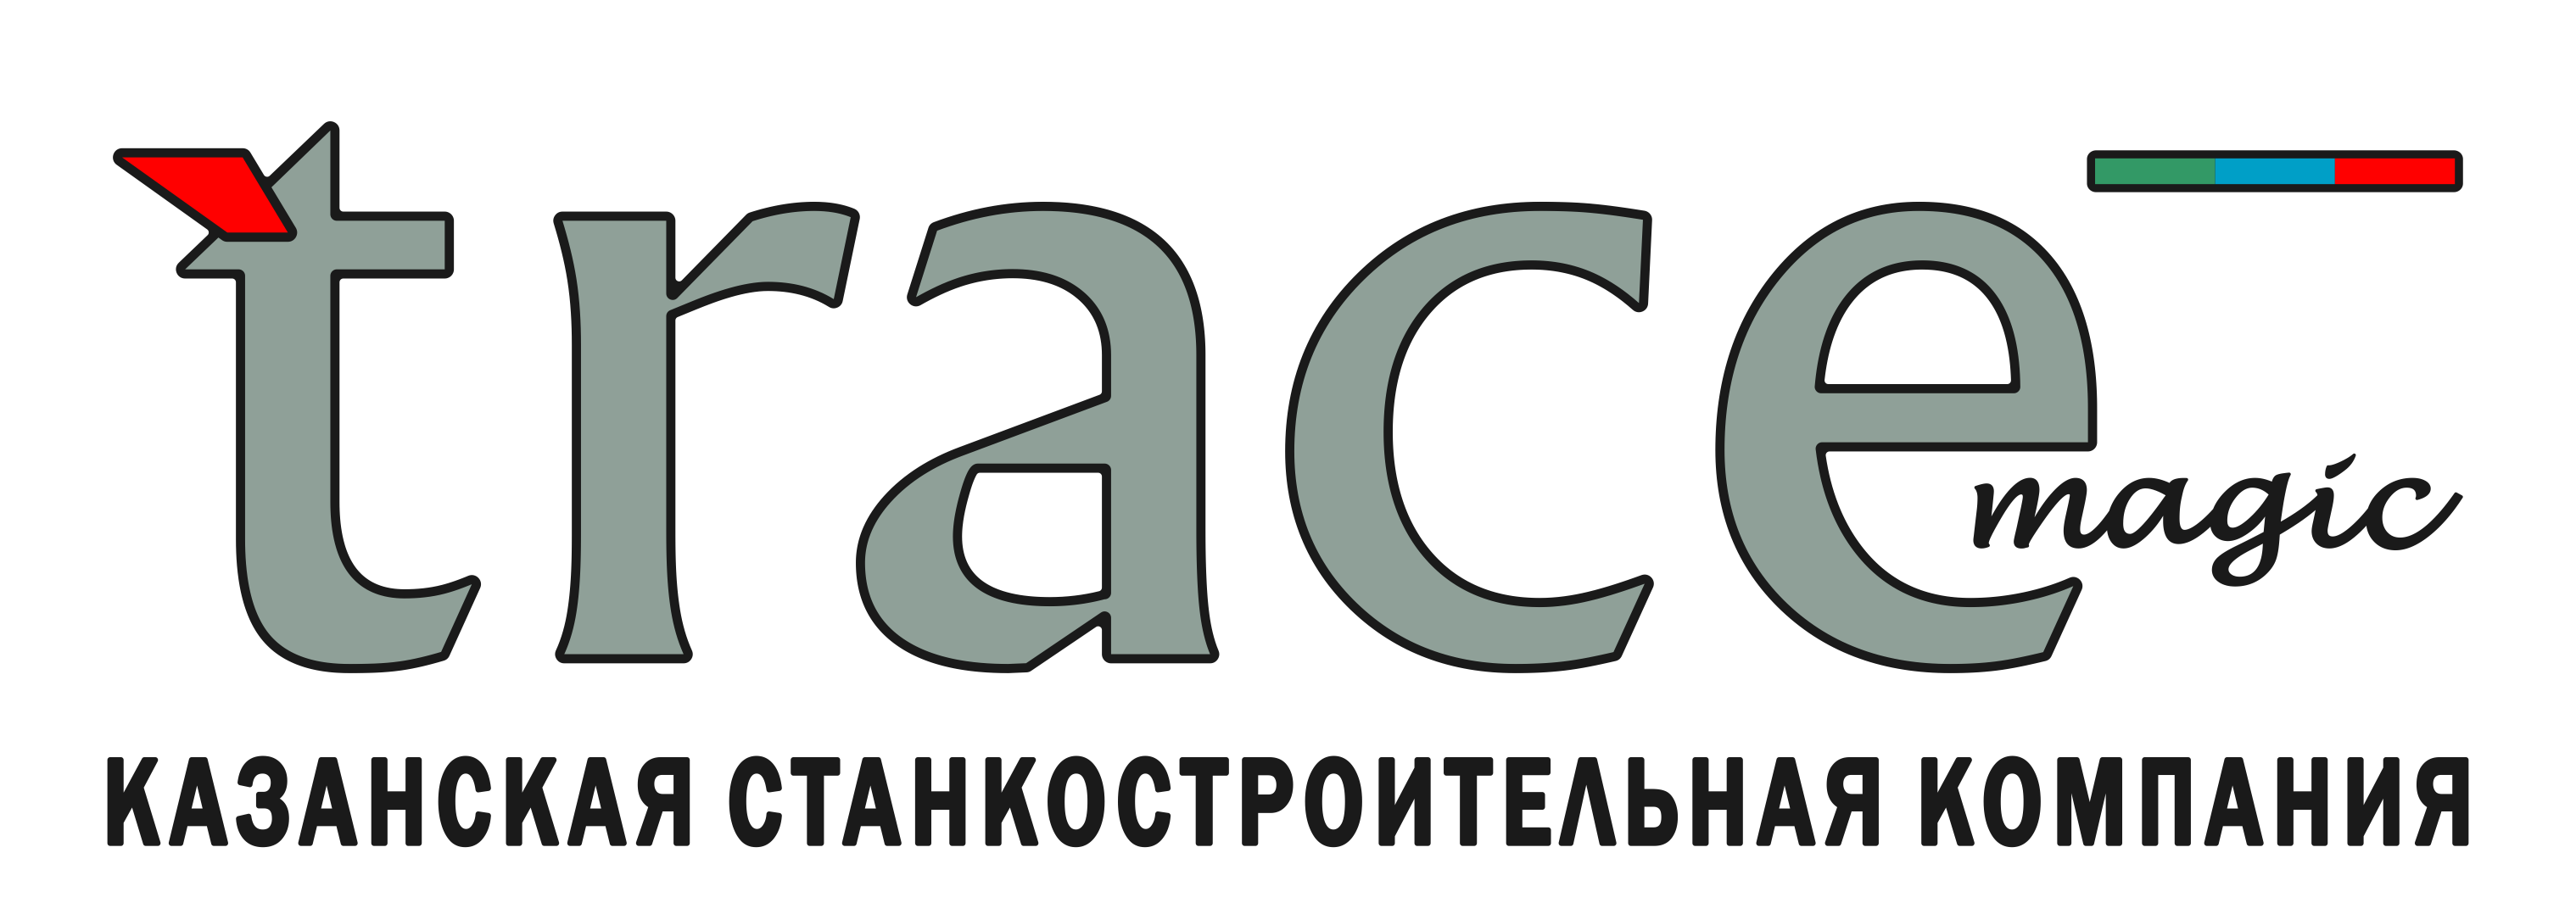 Казанская Станкостроительная Компания «Trace magic»